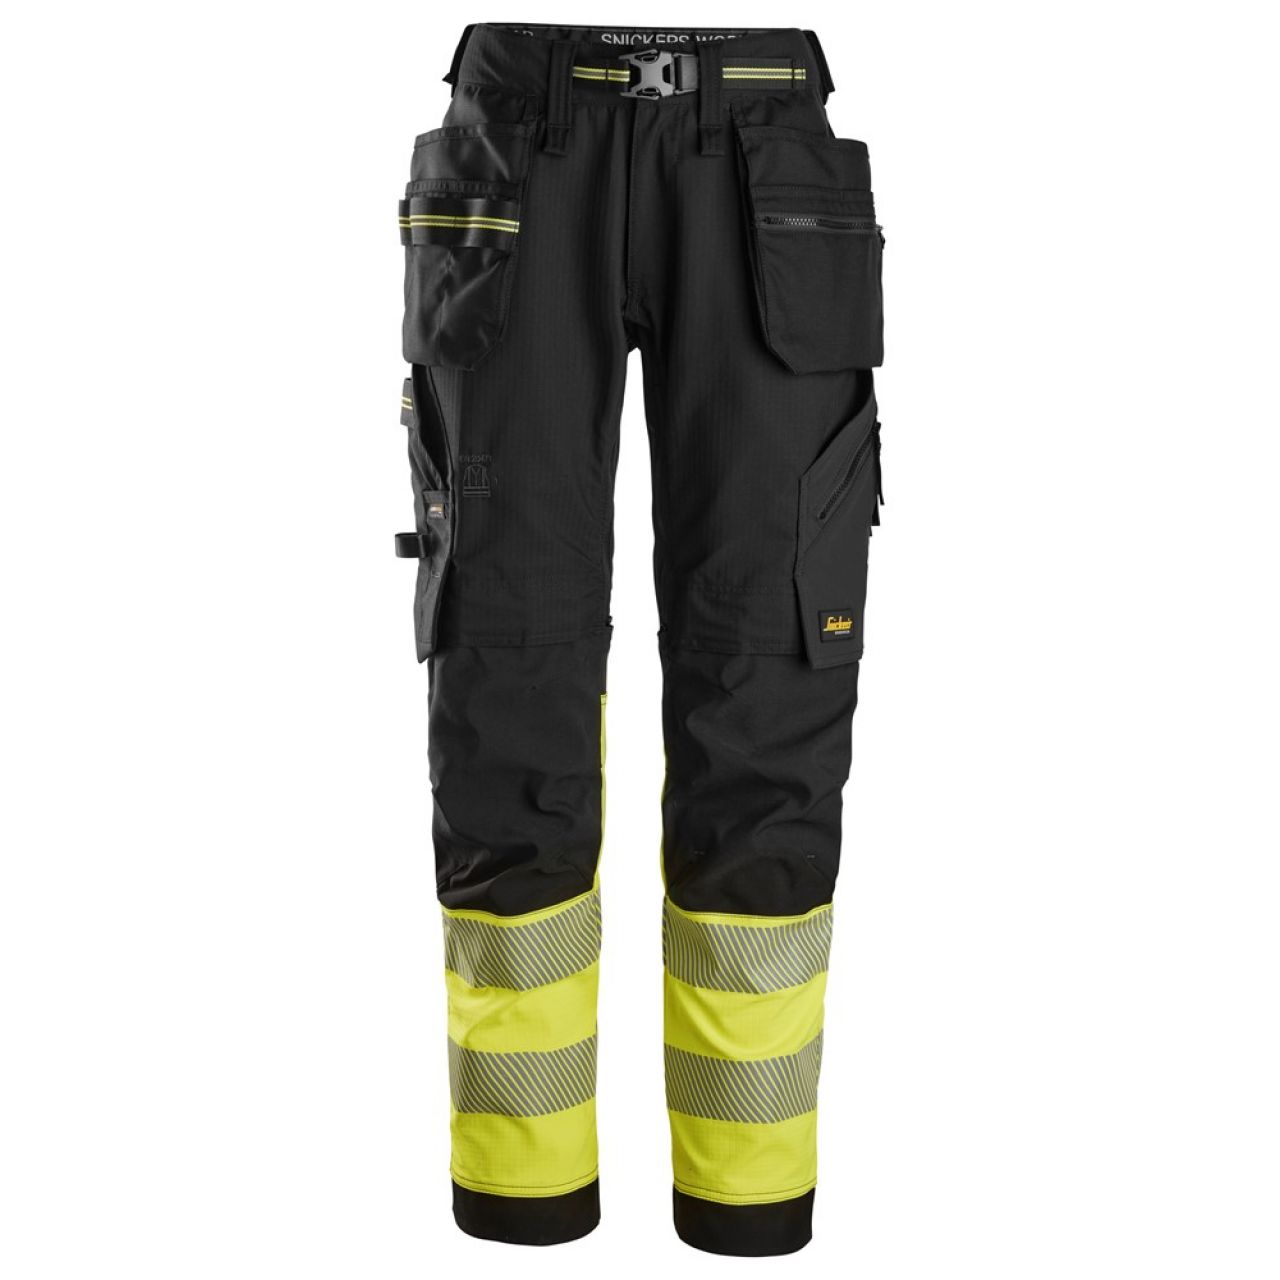 6934 Pantalones largos de trabajo elásticos de alta visibilidad clase 1 con bolsillos flotantes negro-amarillo talla 252